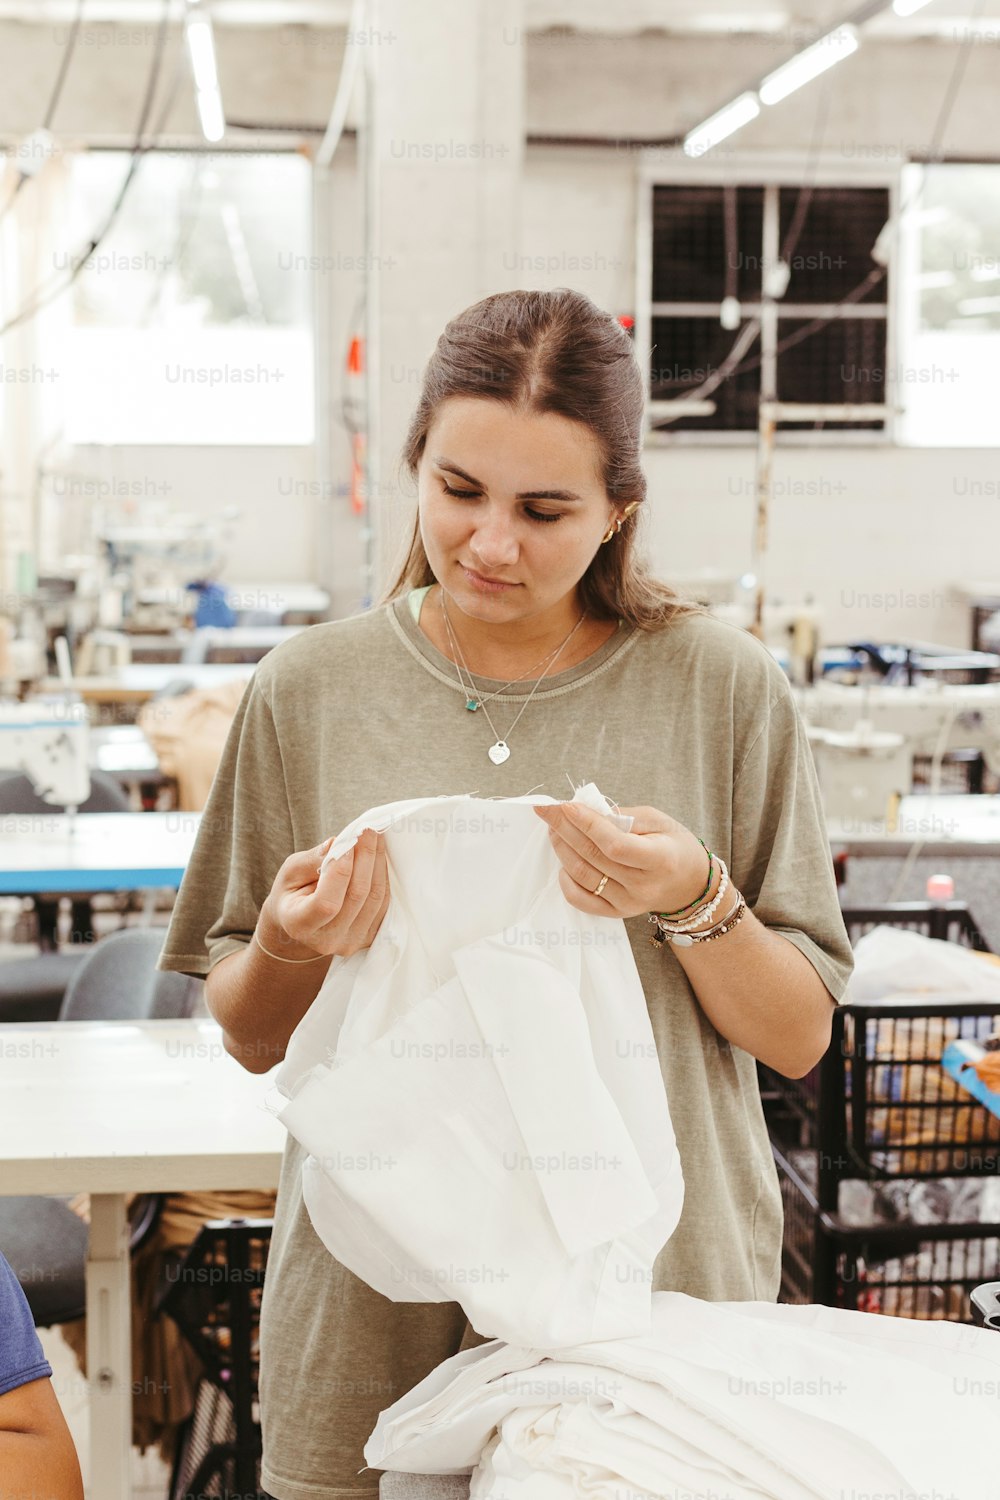 Una donna in una fabbrica che lavora su un pezzo di stoffa